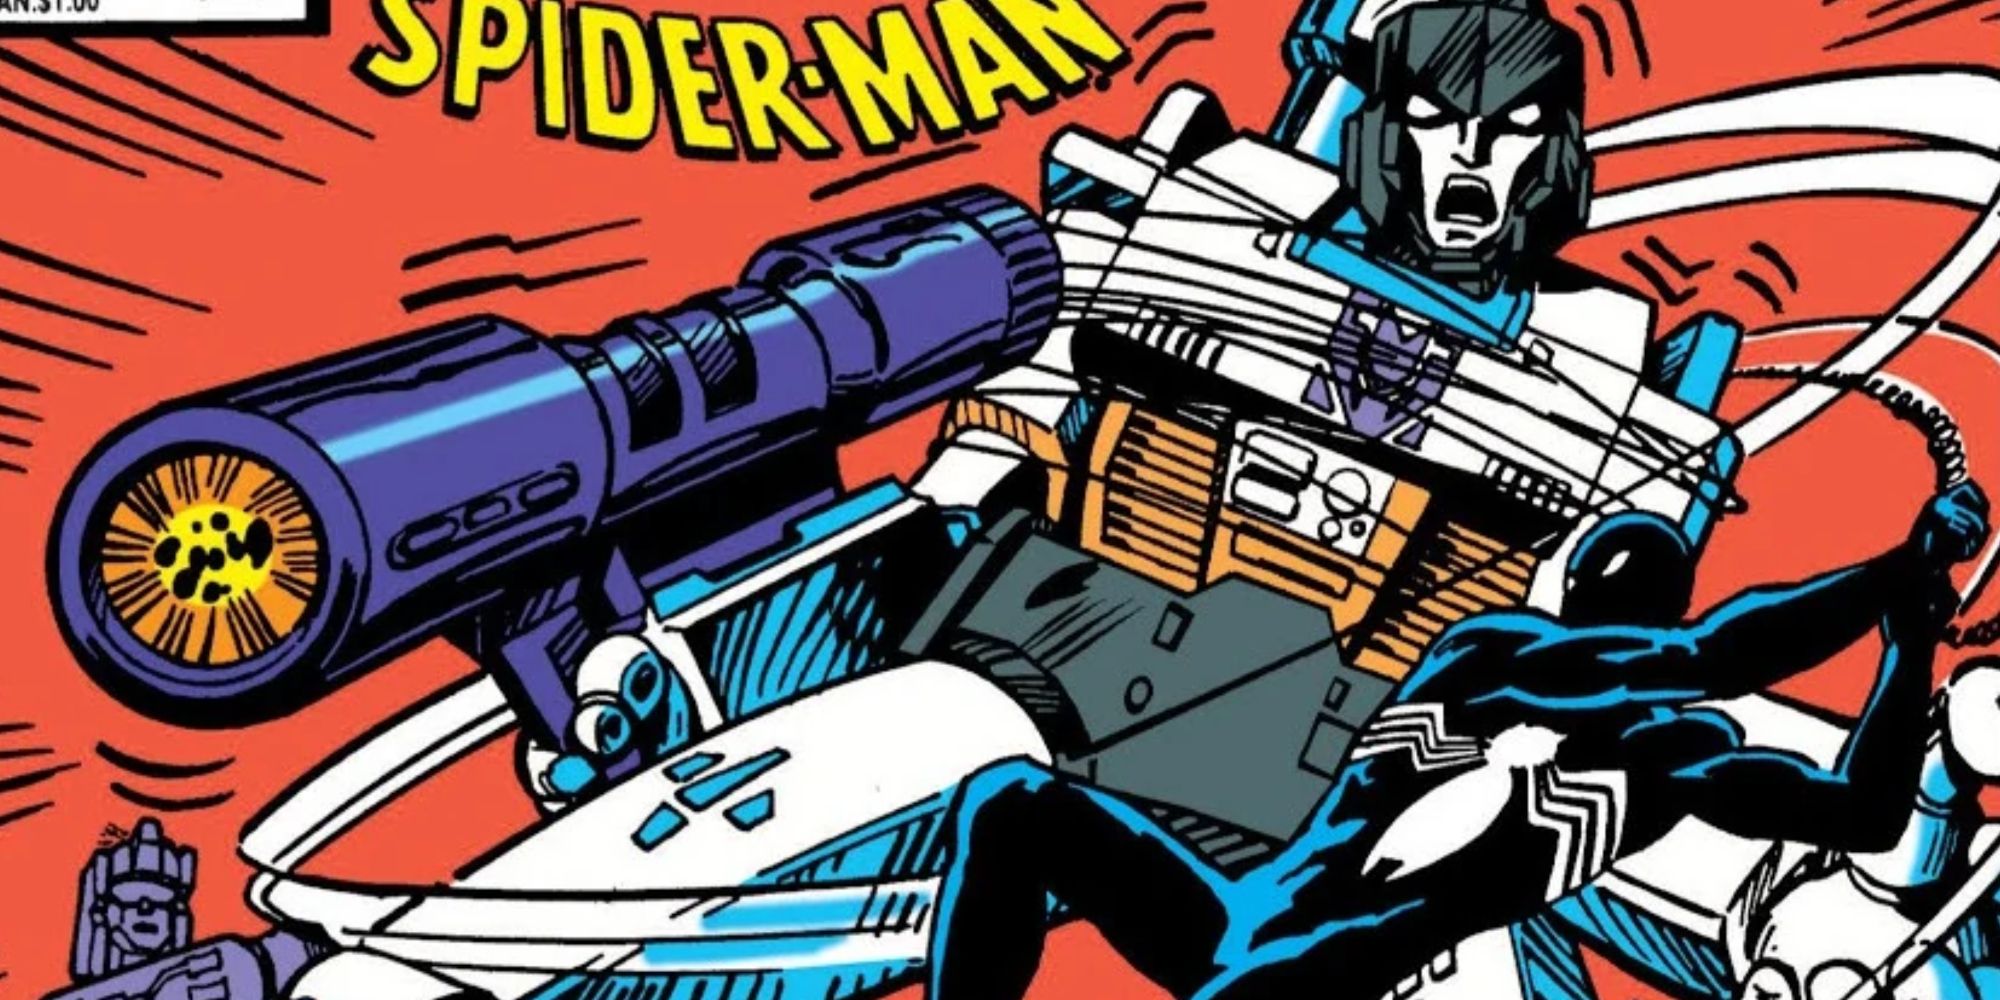 Spider-Man webs up Megatron in Marvel Comics.